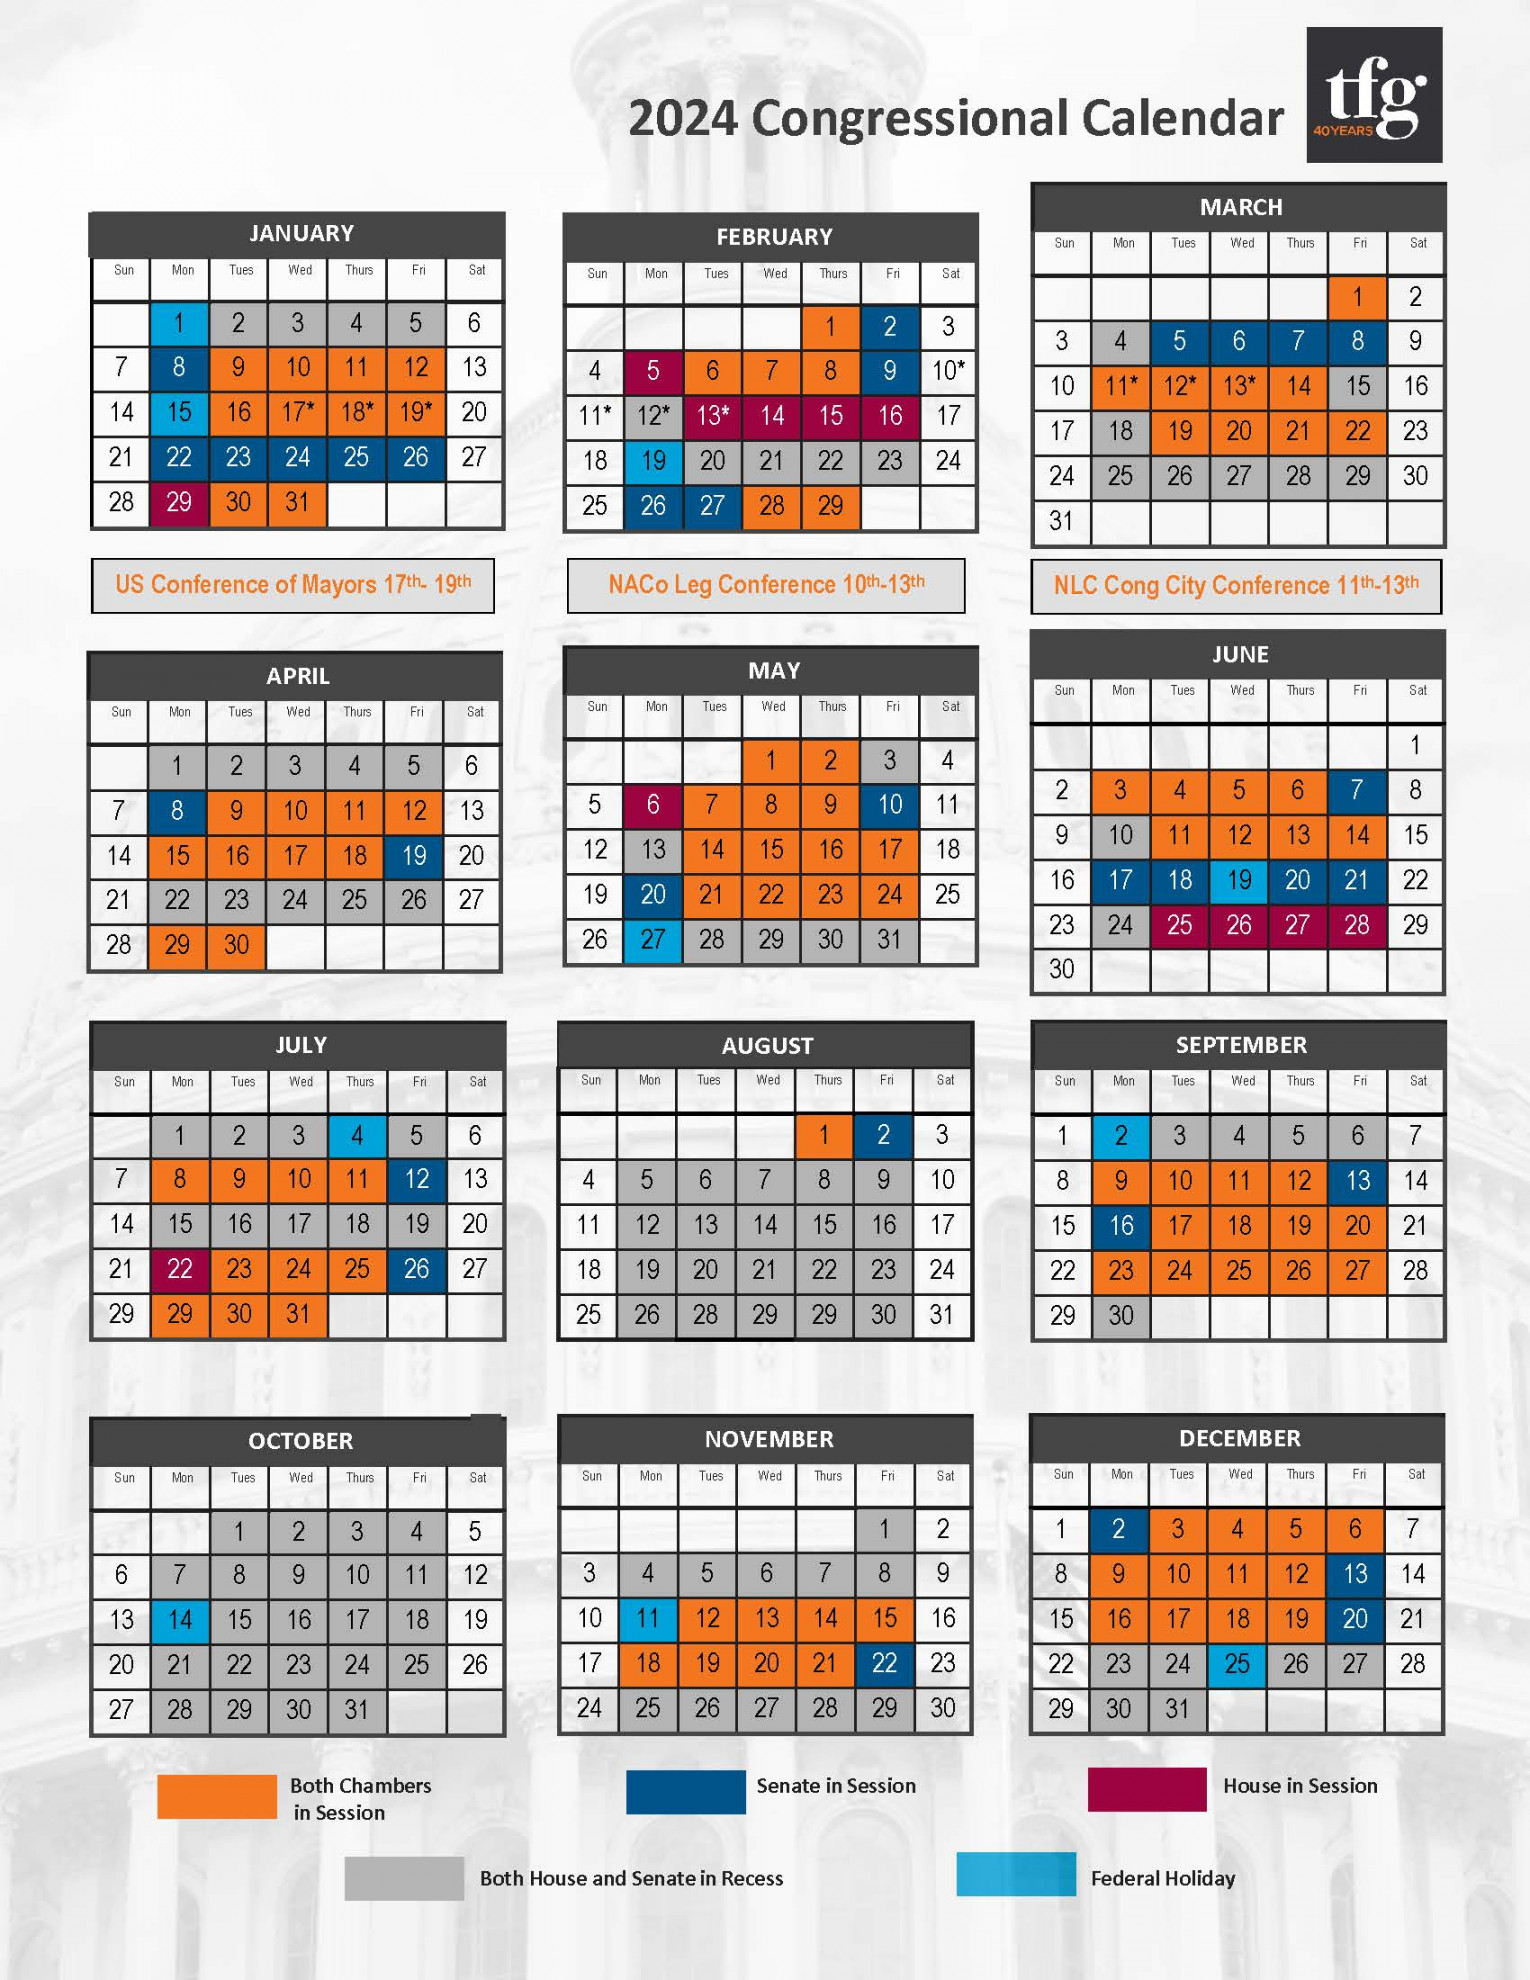 TFG Presents  Congressional Calendar